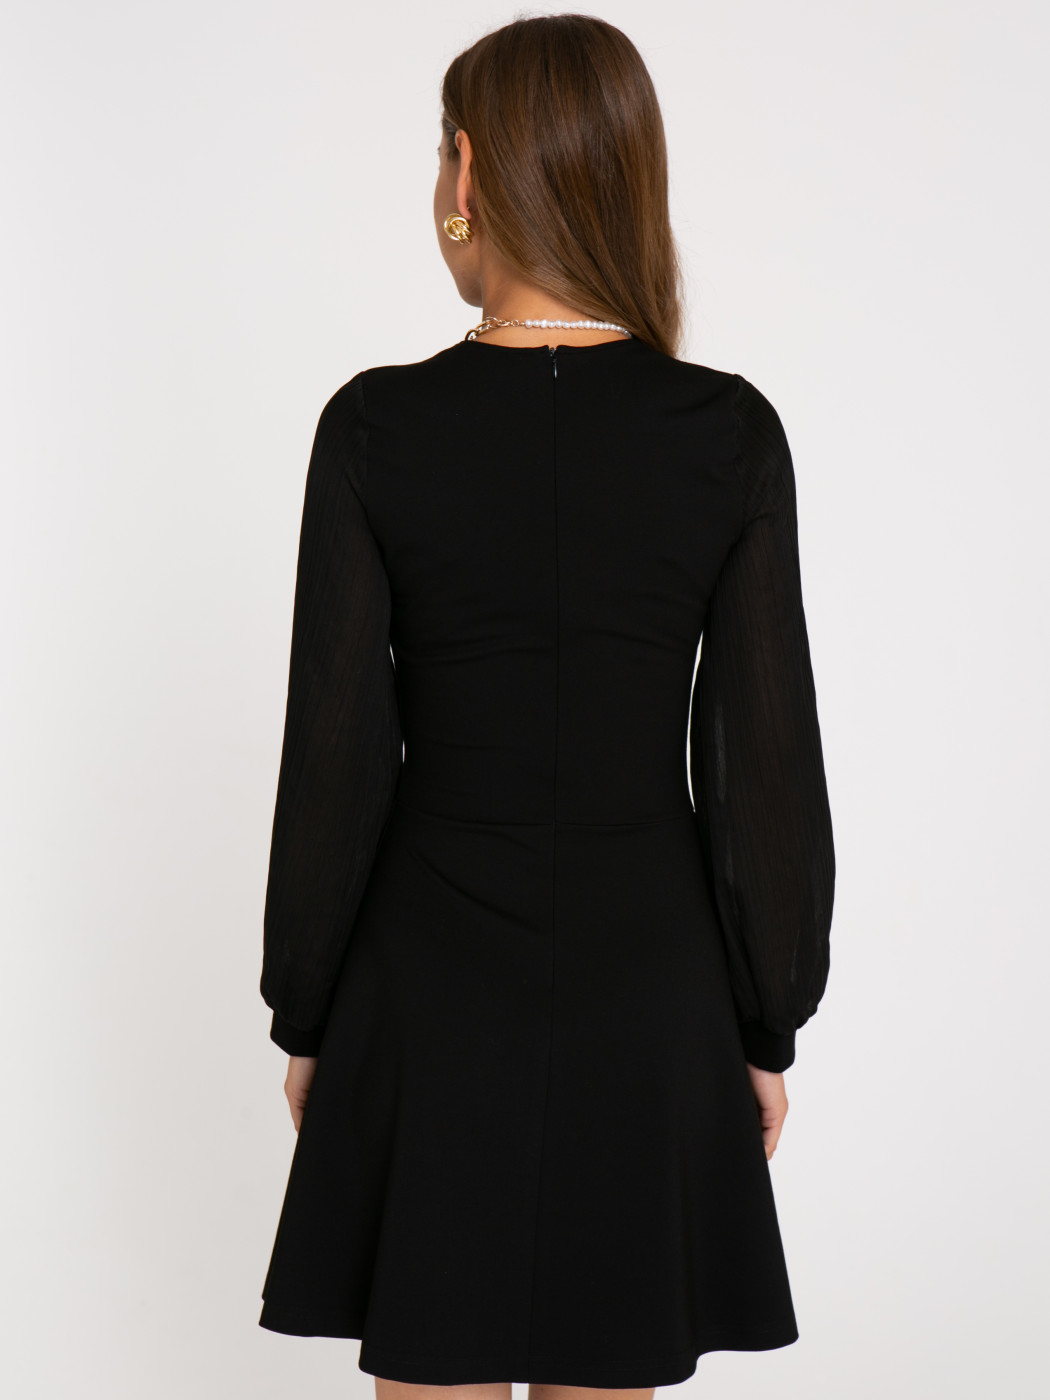 Платье А413 цвет: черный